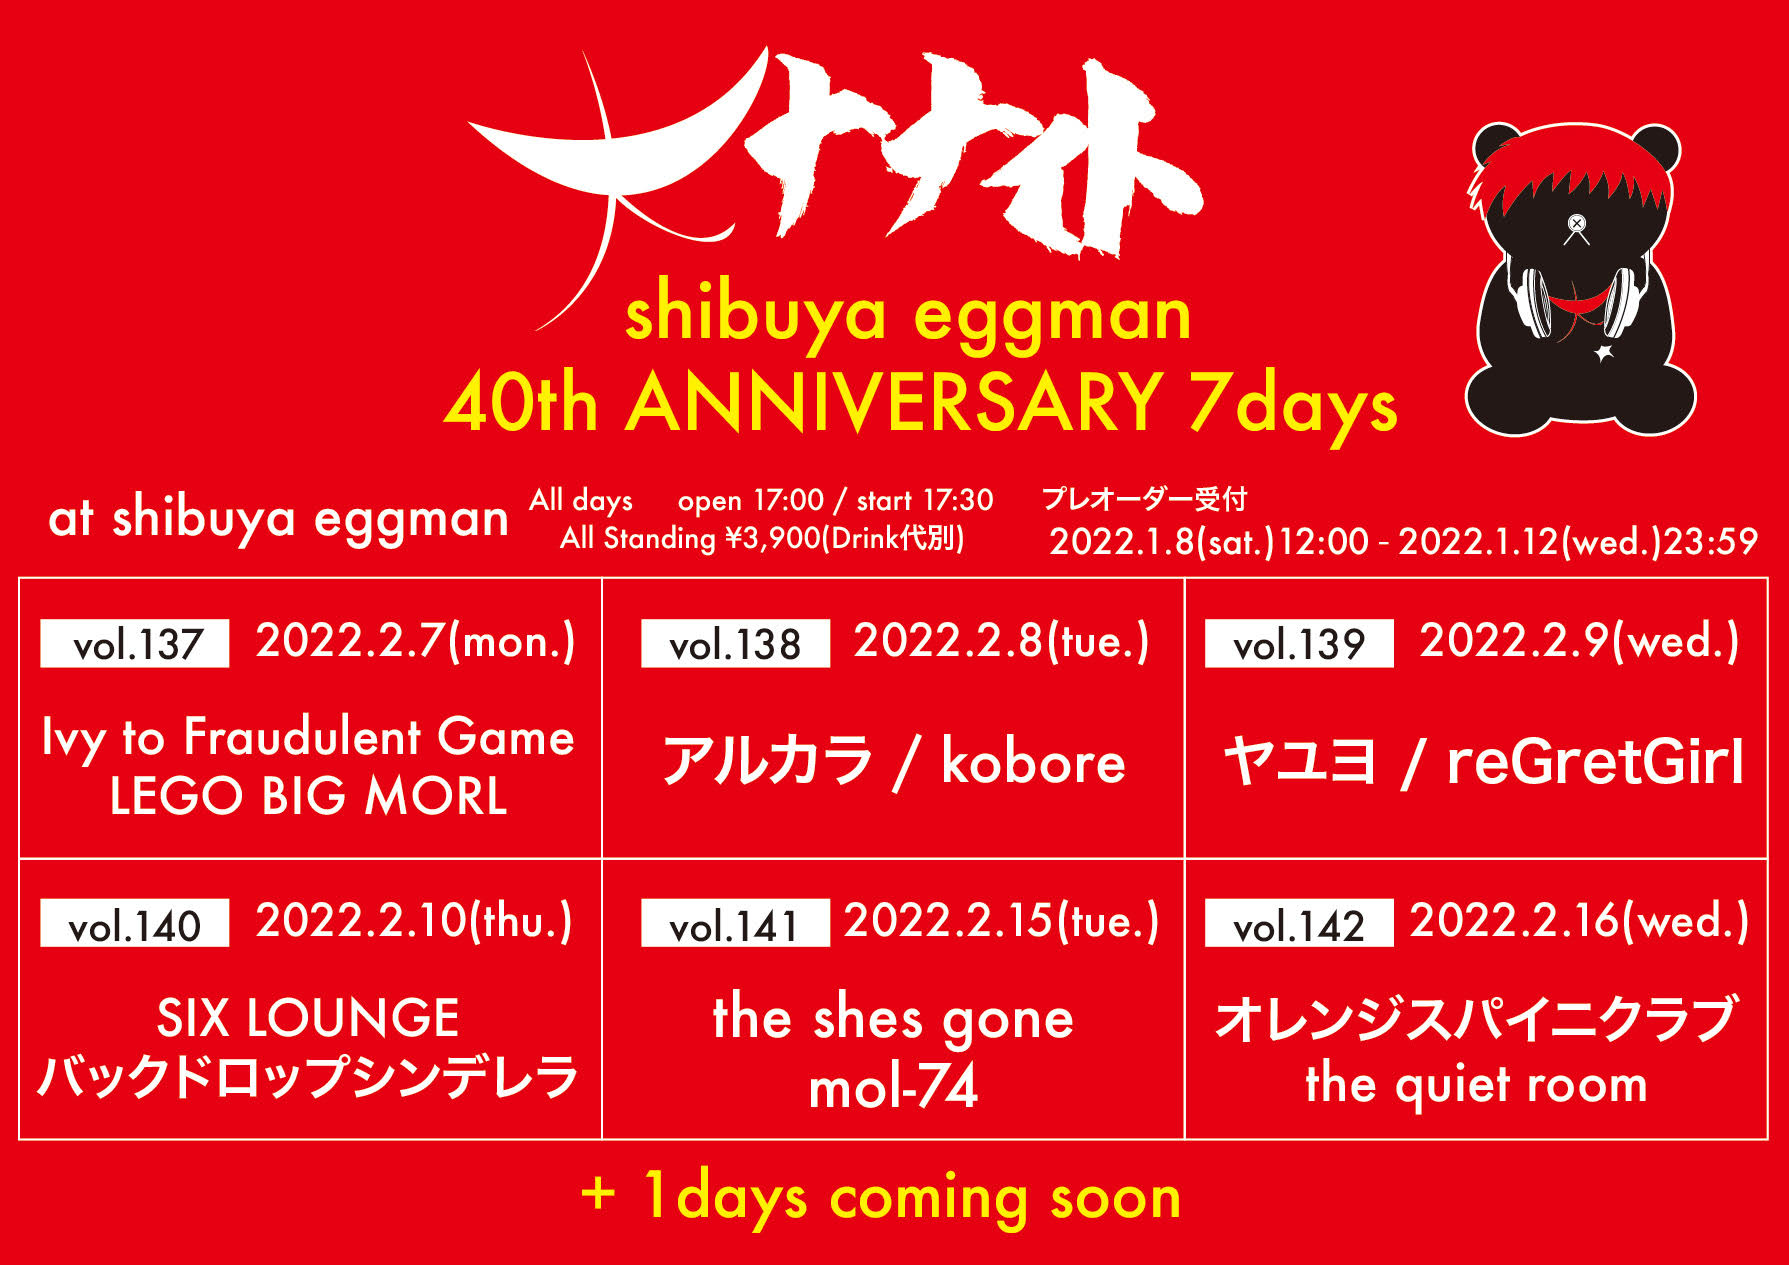 大ナナイトvol.142 〜shibuya eggman 40th ANNIVERSARY 7days〜